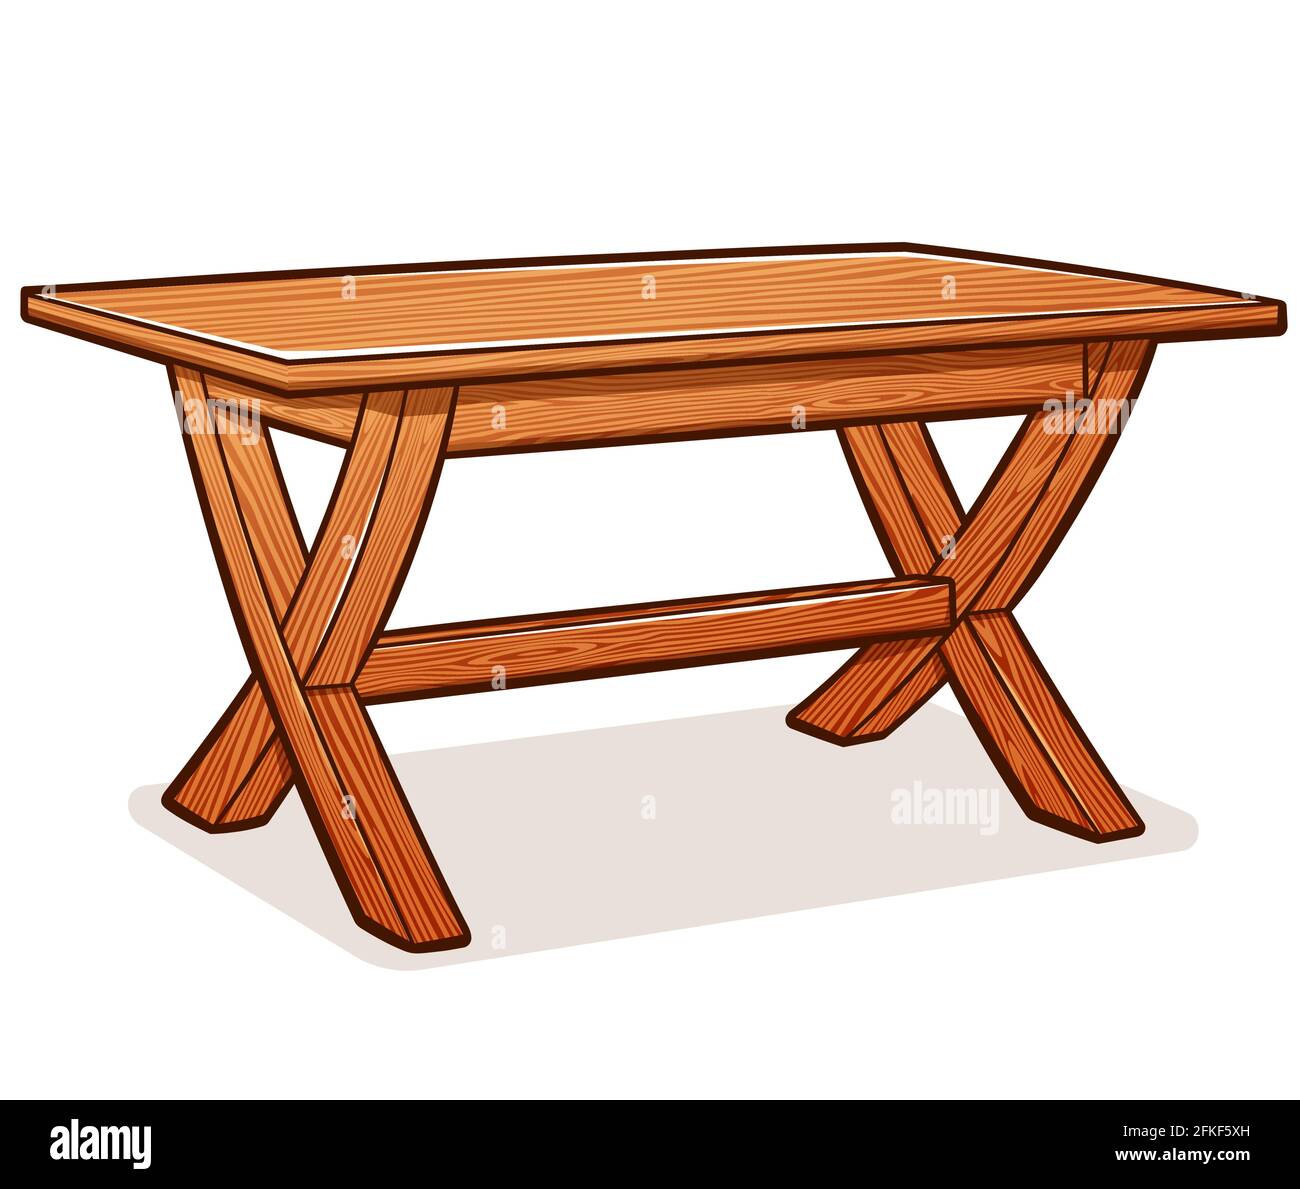 Vektor-Illustration von rustikalen Holztisch Cartoon Stock Vektor